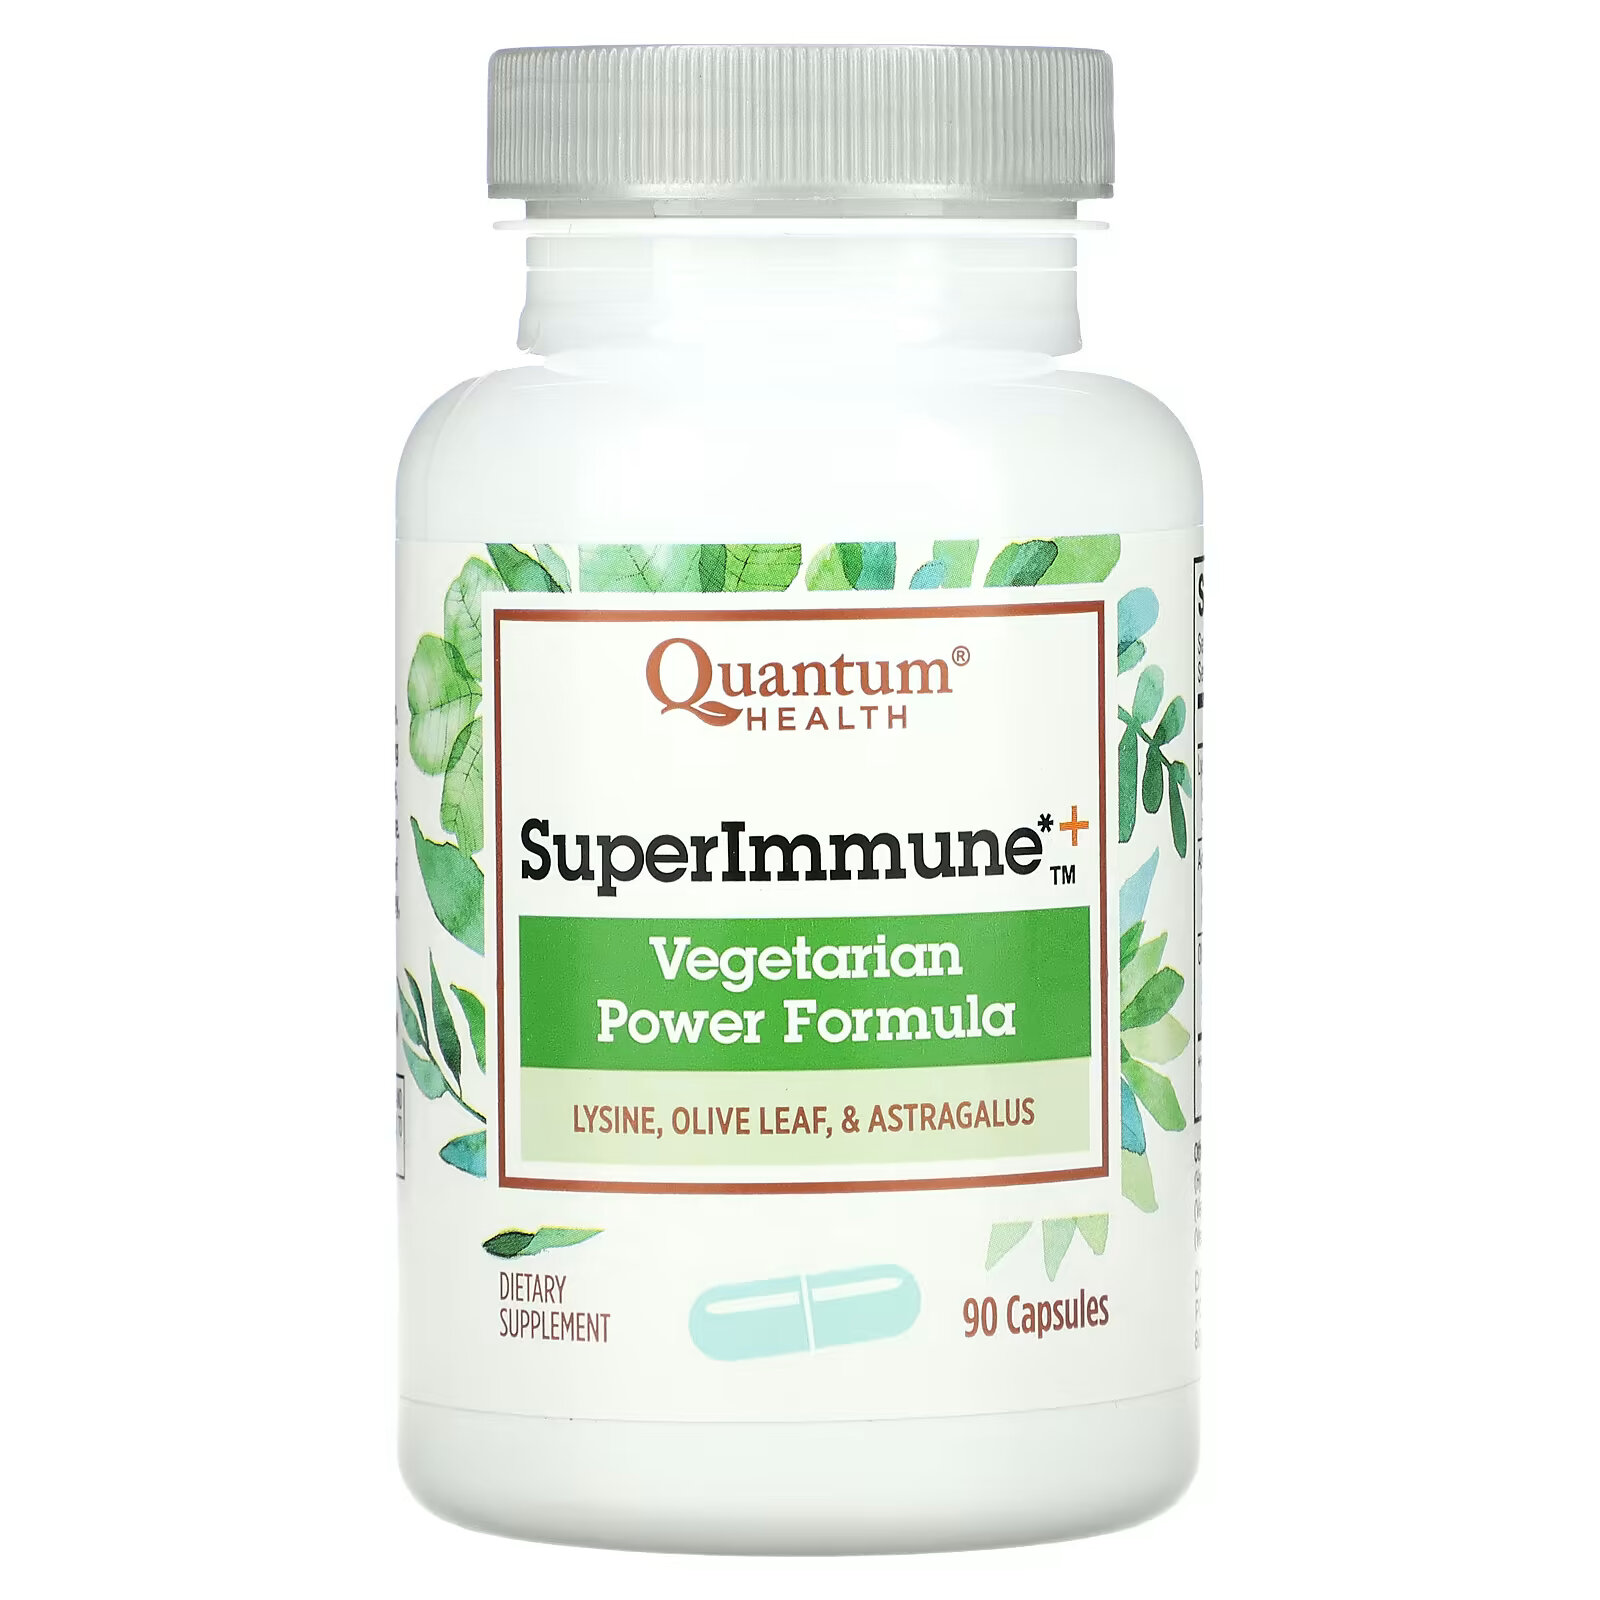 цена Quantum Health, Супер Иммун+, мощная вегетарианская формула продукт, 90 капсул